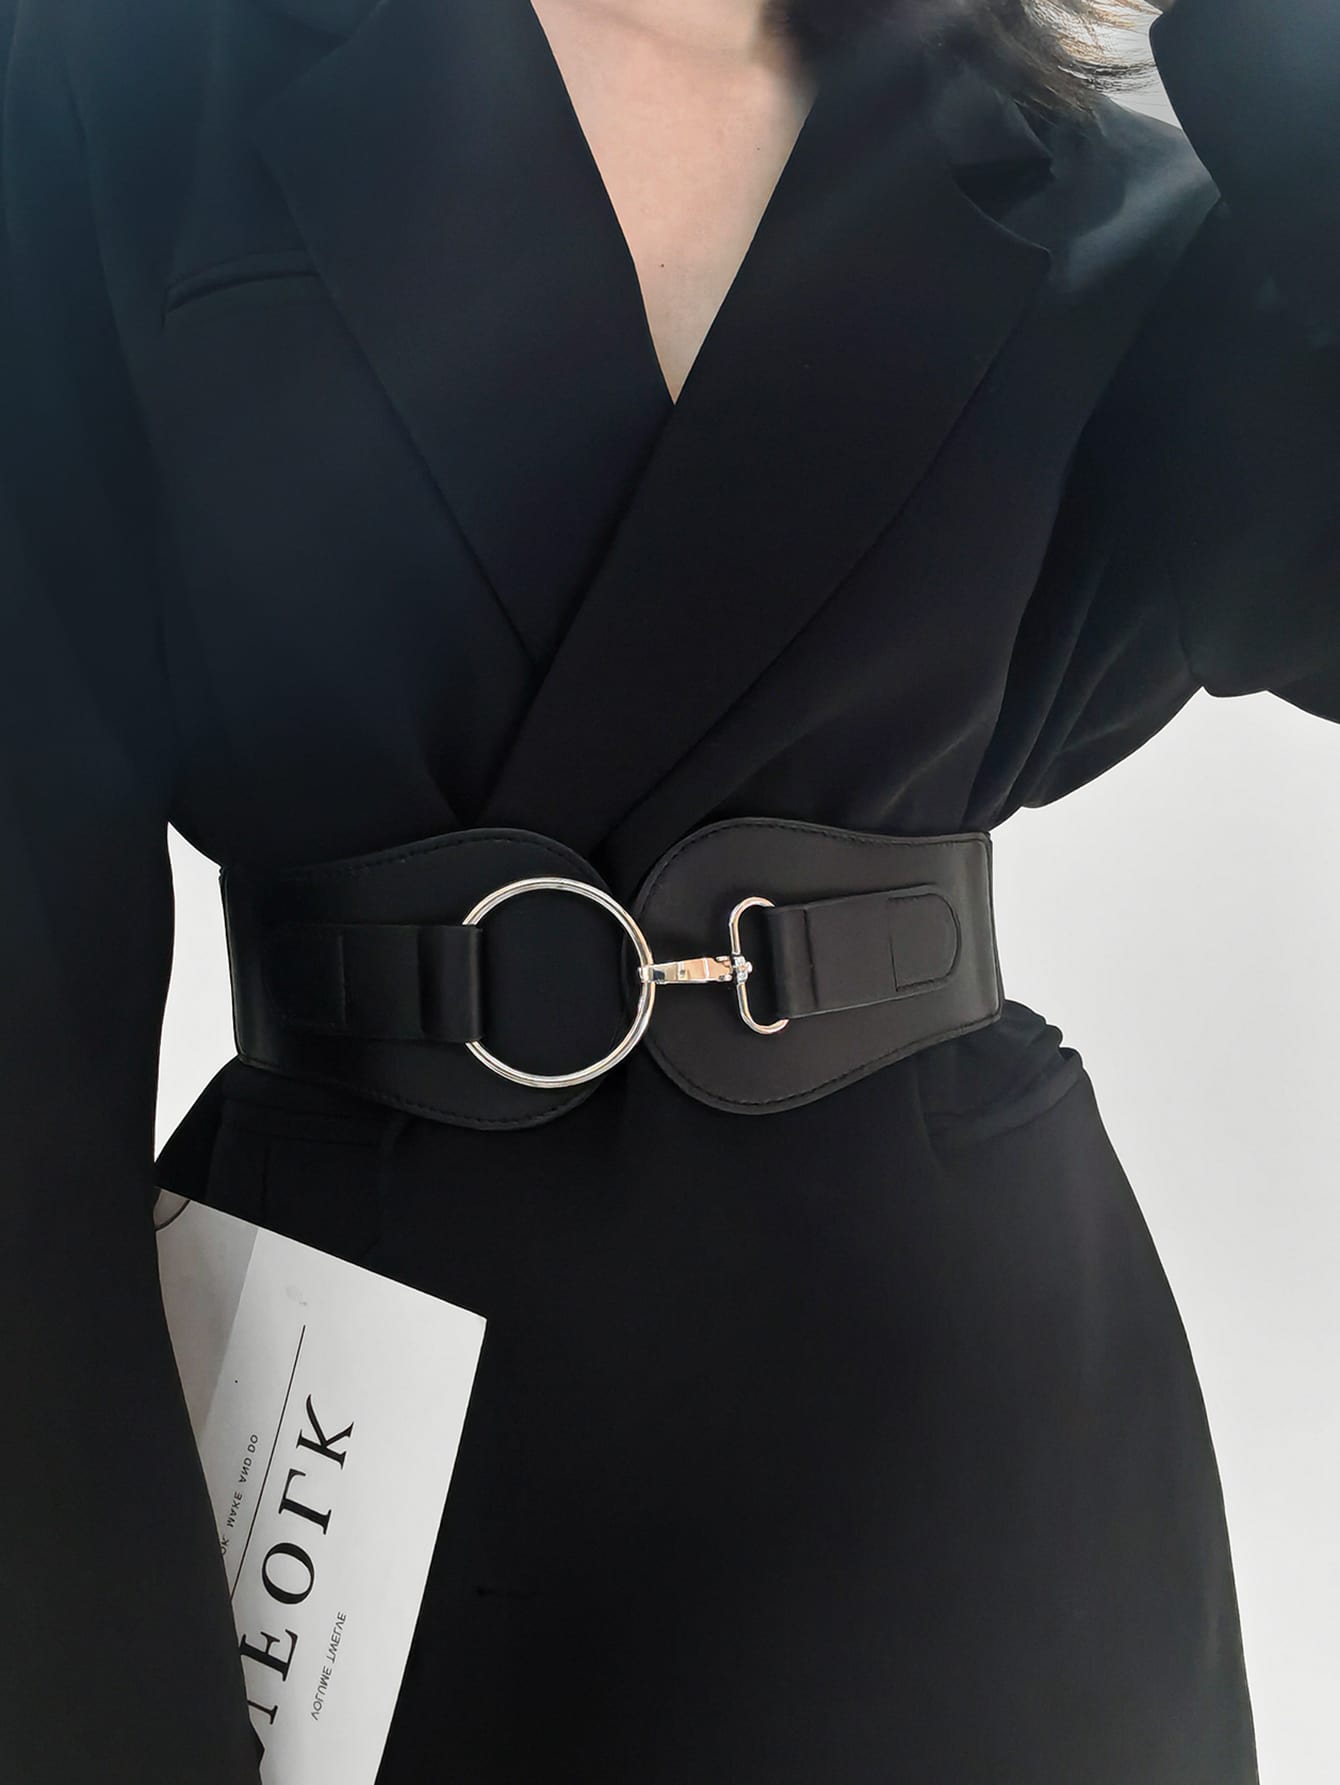 1шт женский черный модный широкий ремень с металлической пряжкой для украшения платья, черный женский модный ремень с металлической пряжкой женский широкий эластичный ремень для платья пальто пояс аксессуары